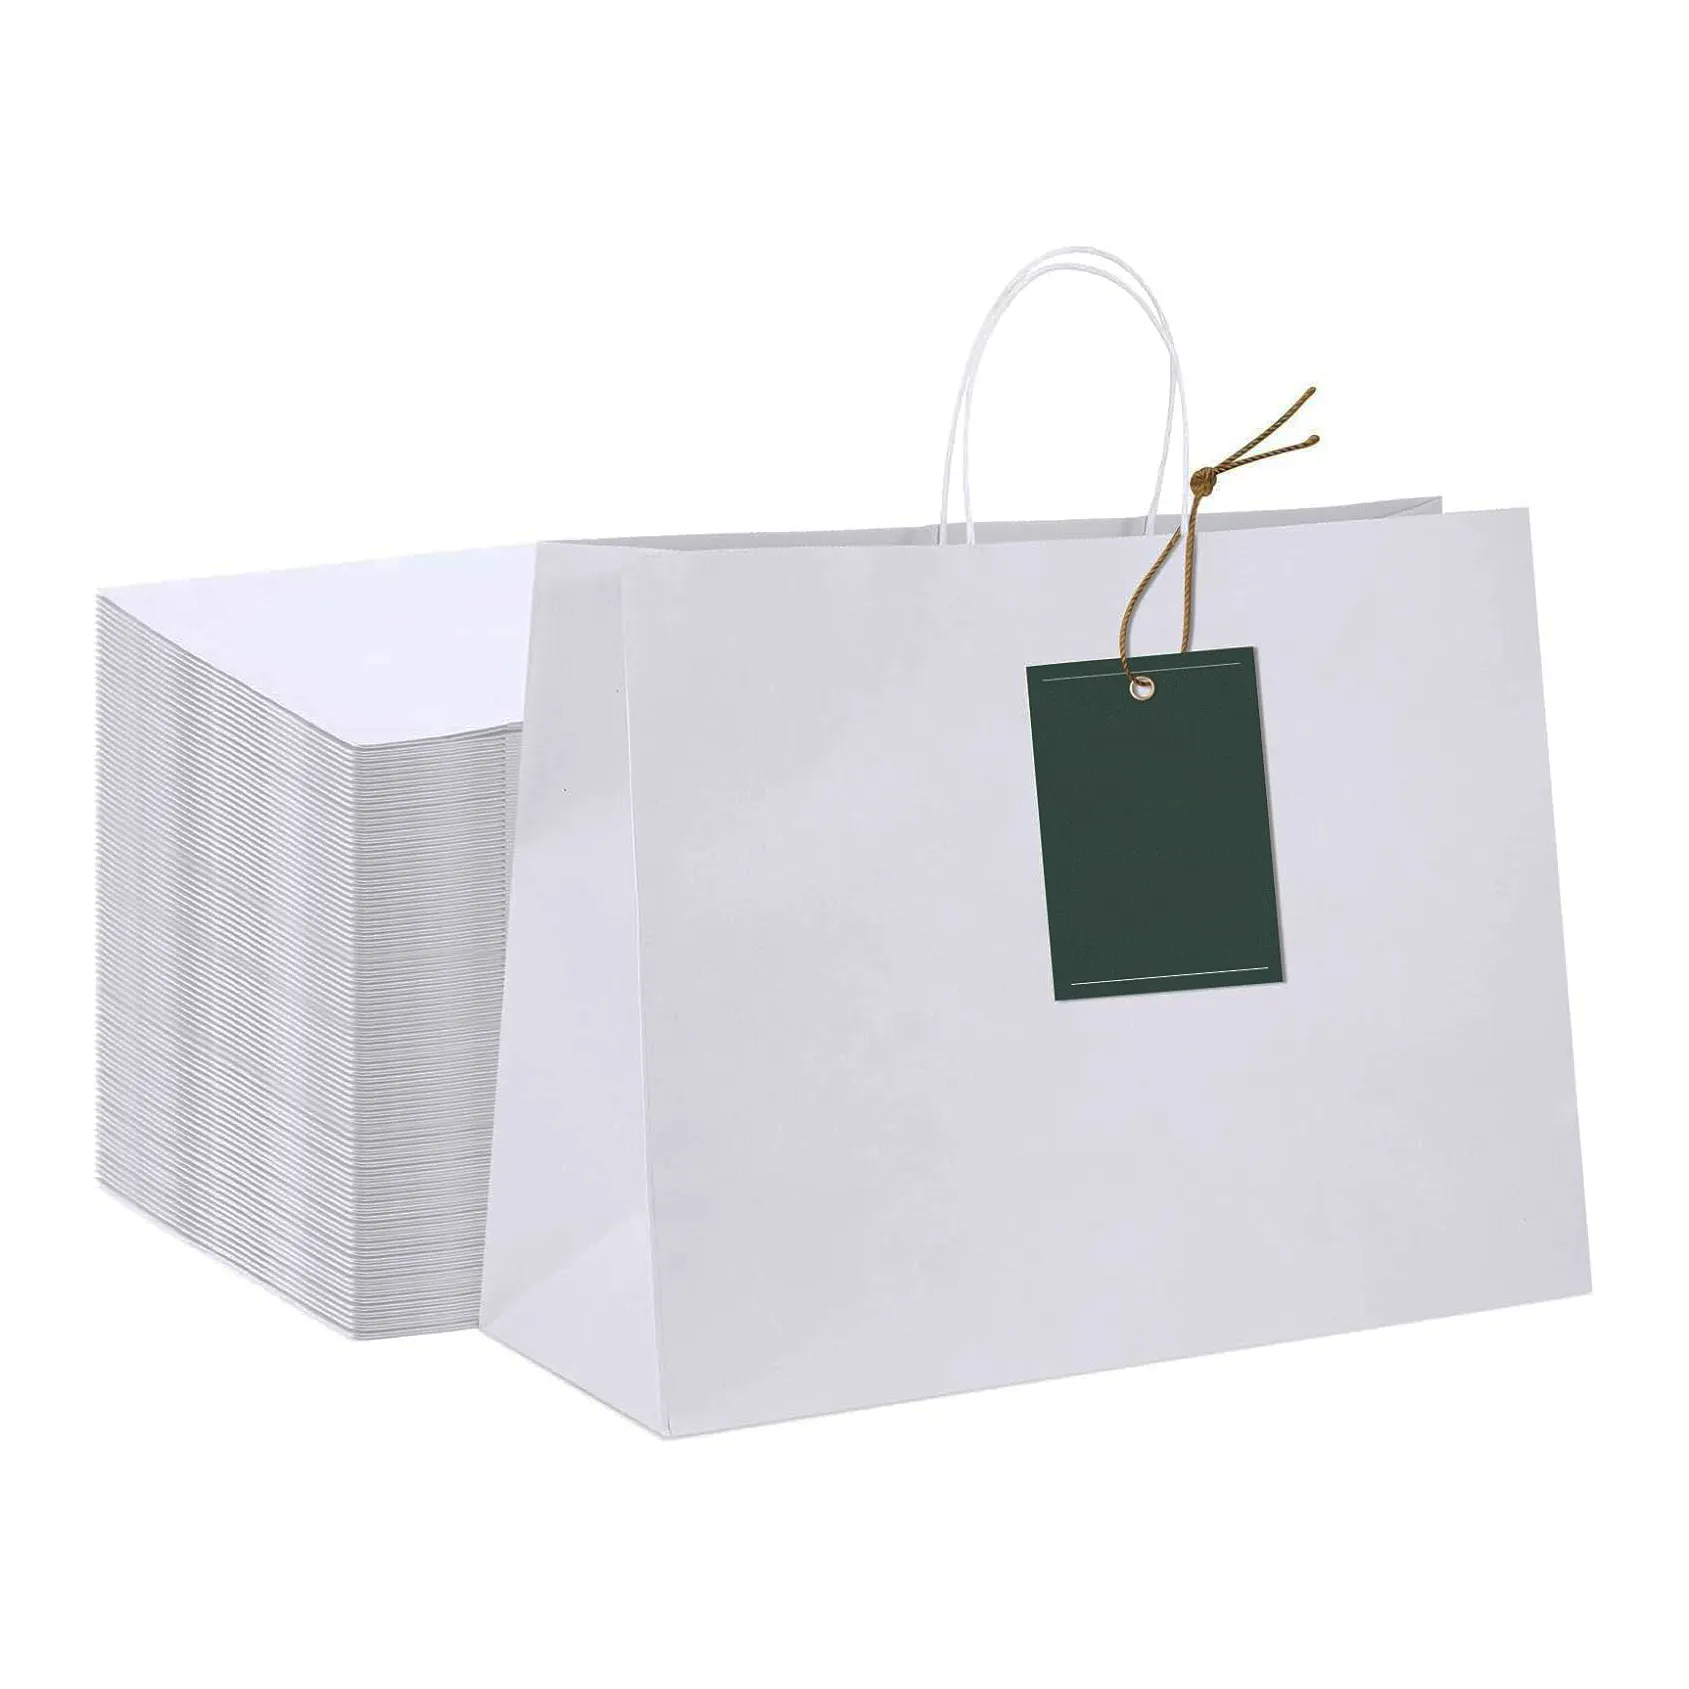 Giocattoli di compleanno per bambini imballaggio di carta Kraft bianca per acquisti di dimensioni personalizzate negozio di articoli da regalo Business 26*12*31.5 per feste goodie bag